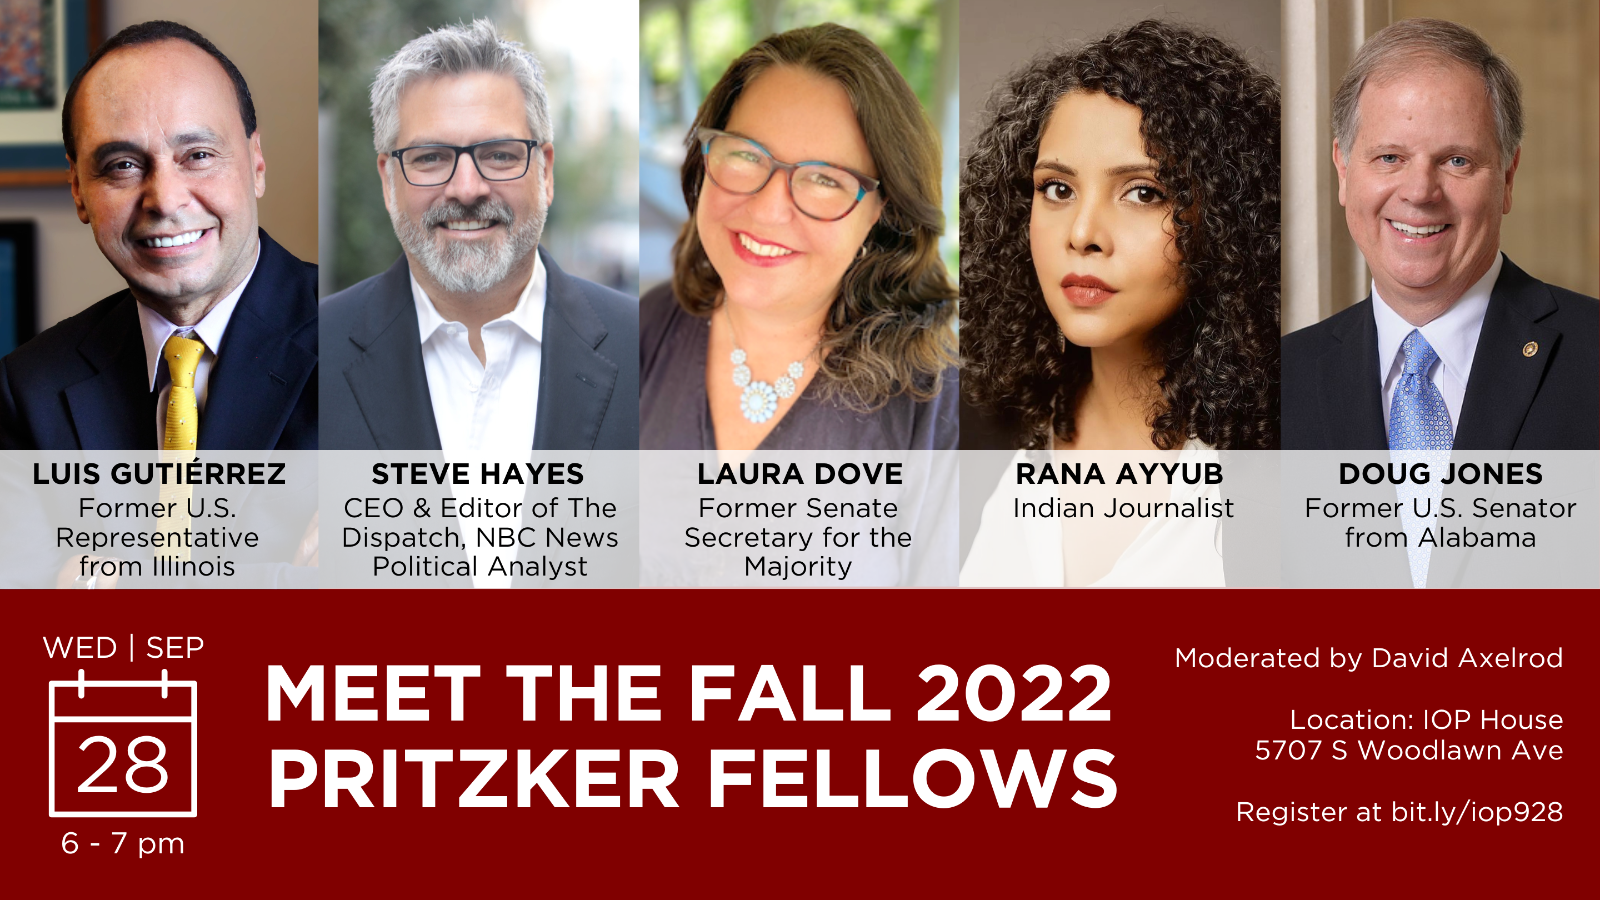 Meet the Fall 2022 Pritzker Fellows